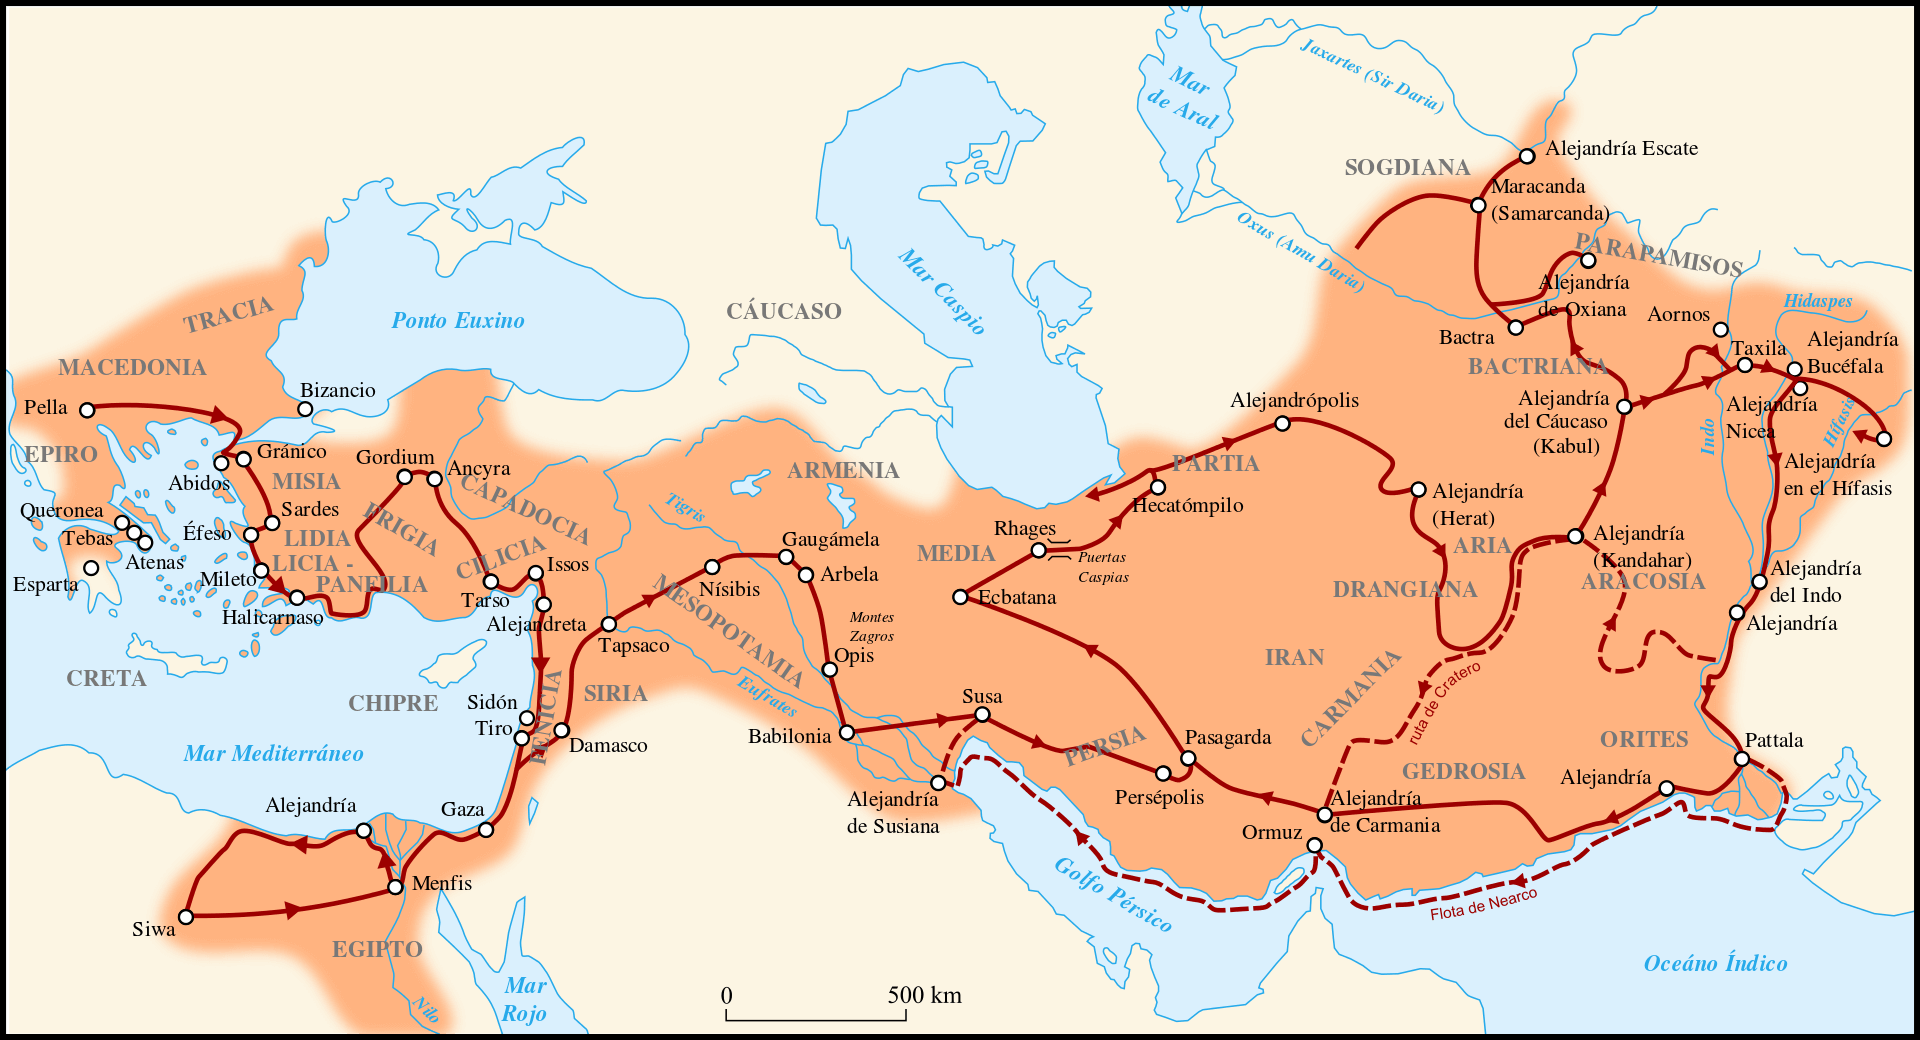 Mapa de la máxima extensión del imperio de Alejandro.